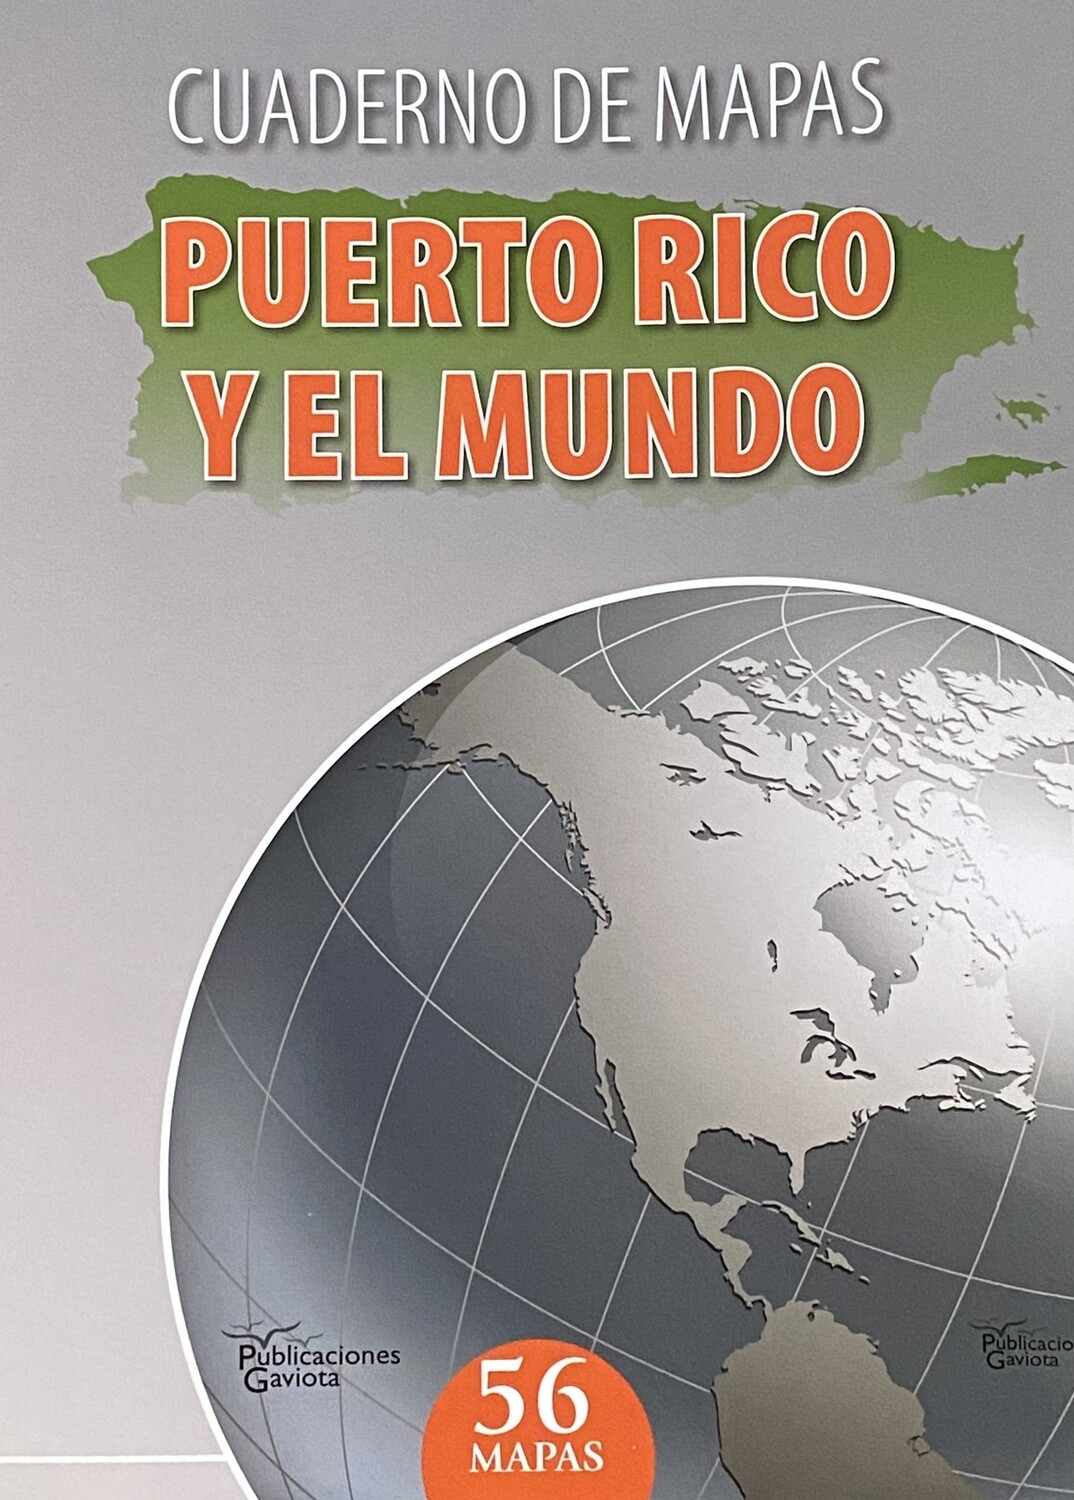 SEVENTH GRADE - CUADERNO DE MAPAS PUERTO RICO Y EL MUNDO -  EDGAV - ISBN 9781615052264